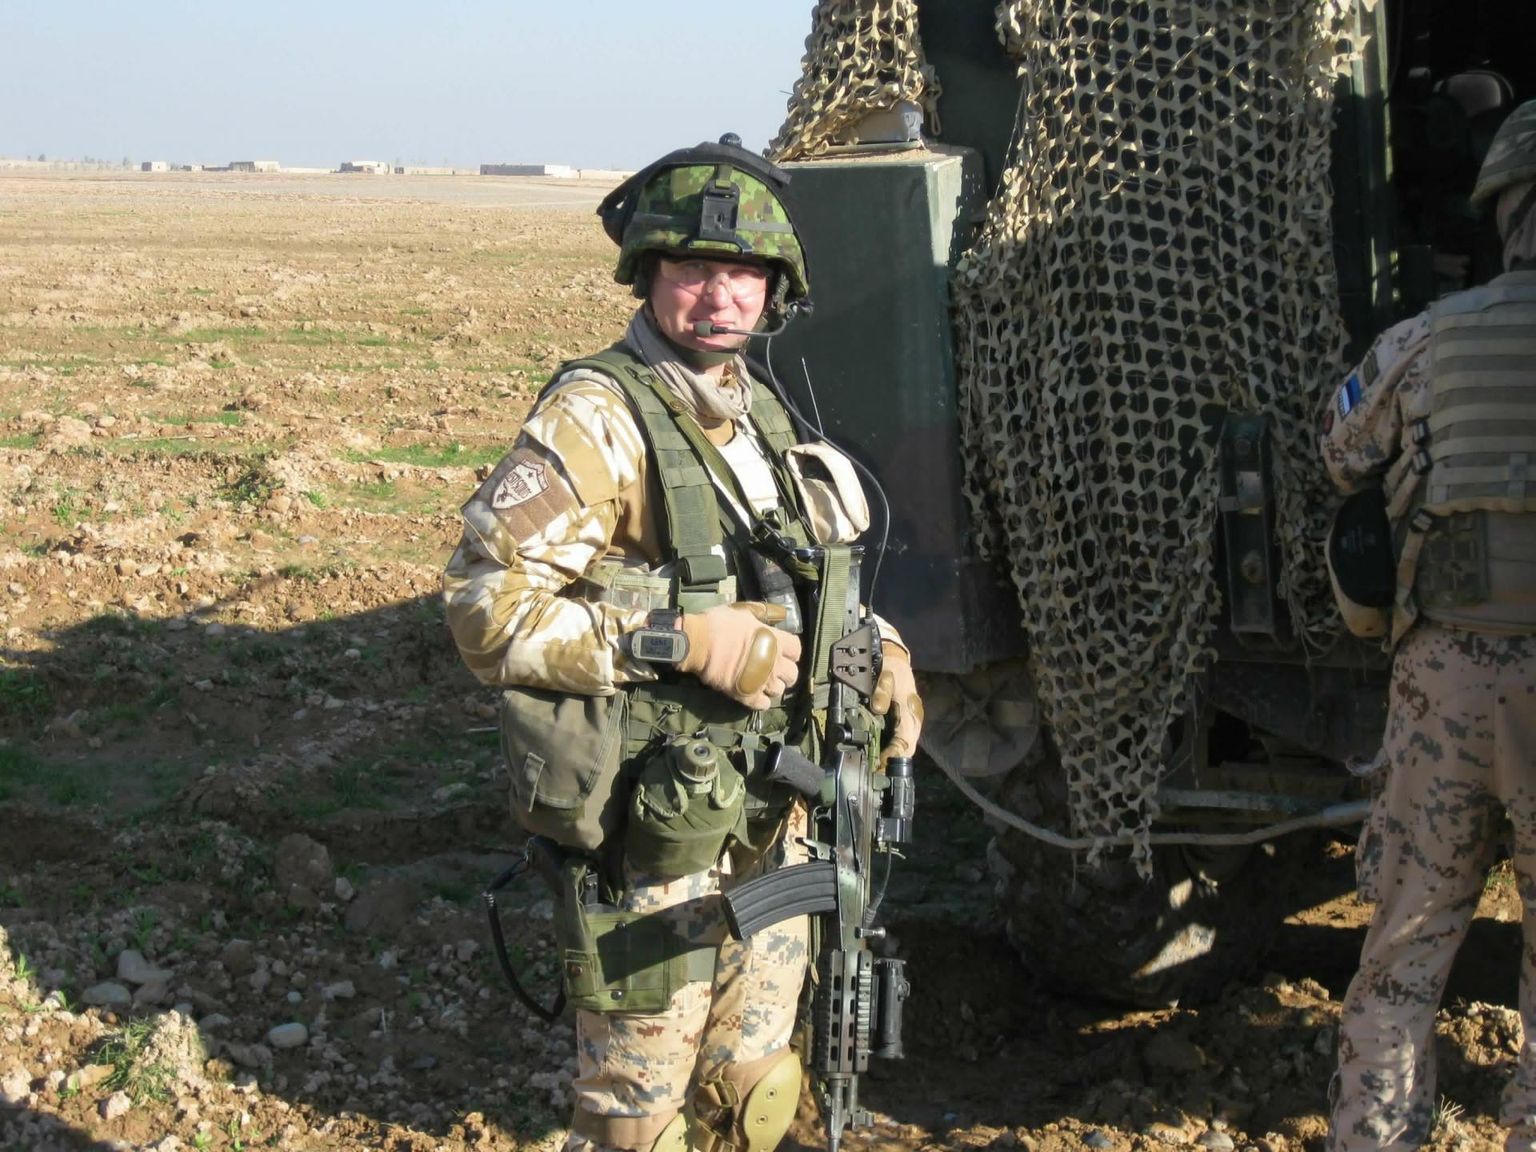 «Mul oli õnn olla kaks korda järjest kompanii veeblina Afganistanis. Peale minu on vaid üks-kaks meest seda saanud teha,» ütleb Scoutspataljoni staabiveebel Kaido Õim.